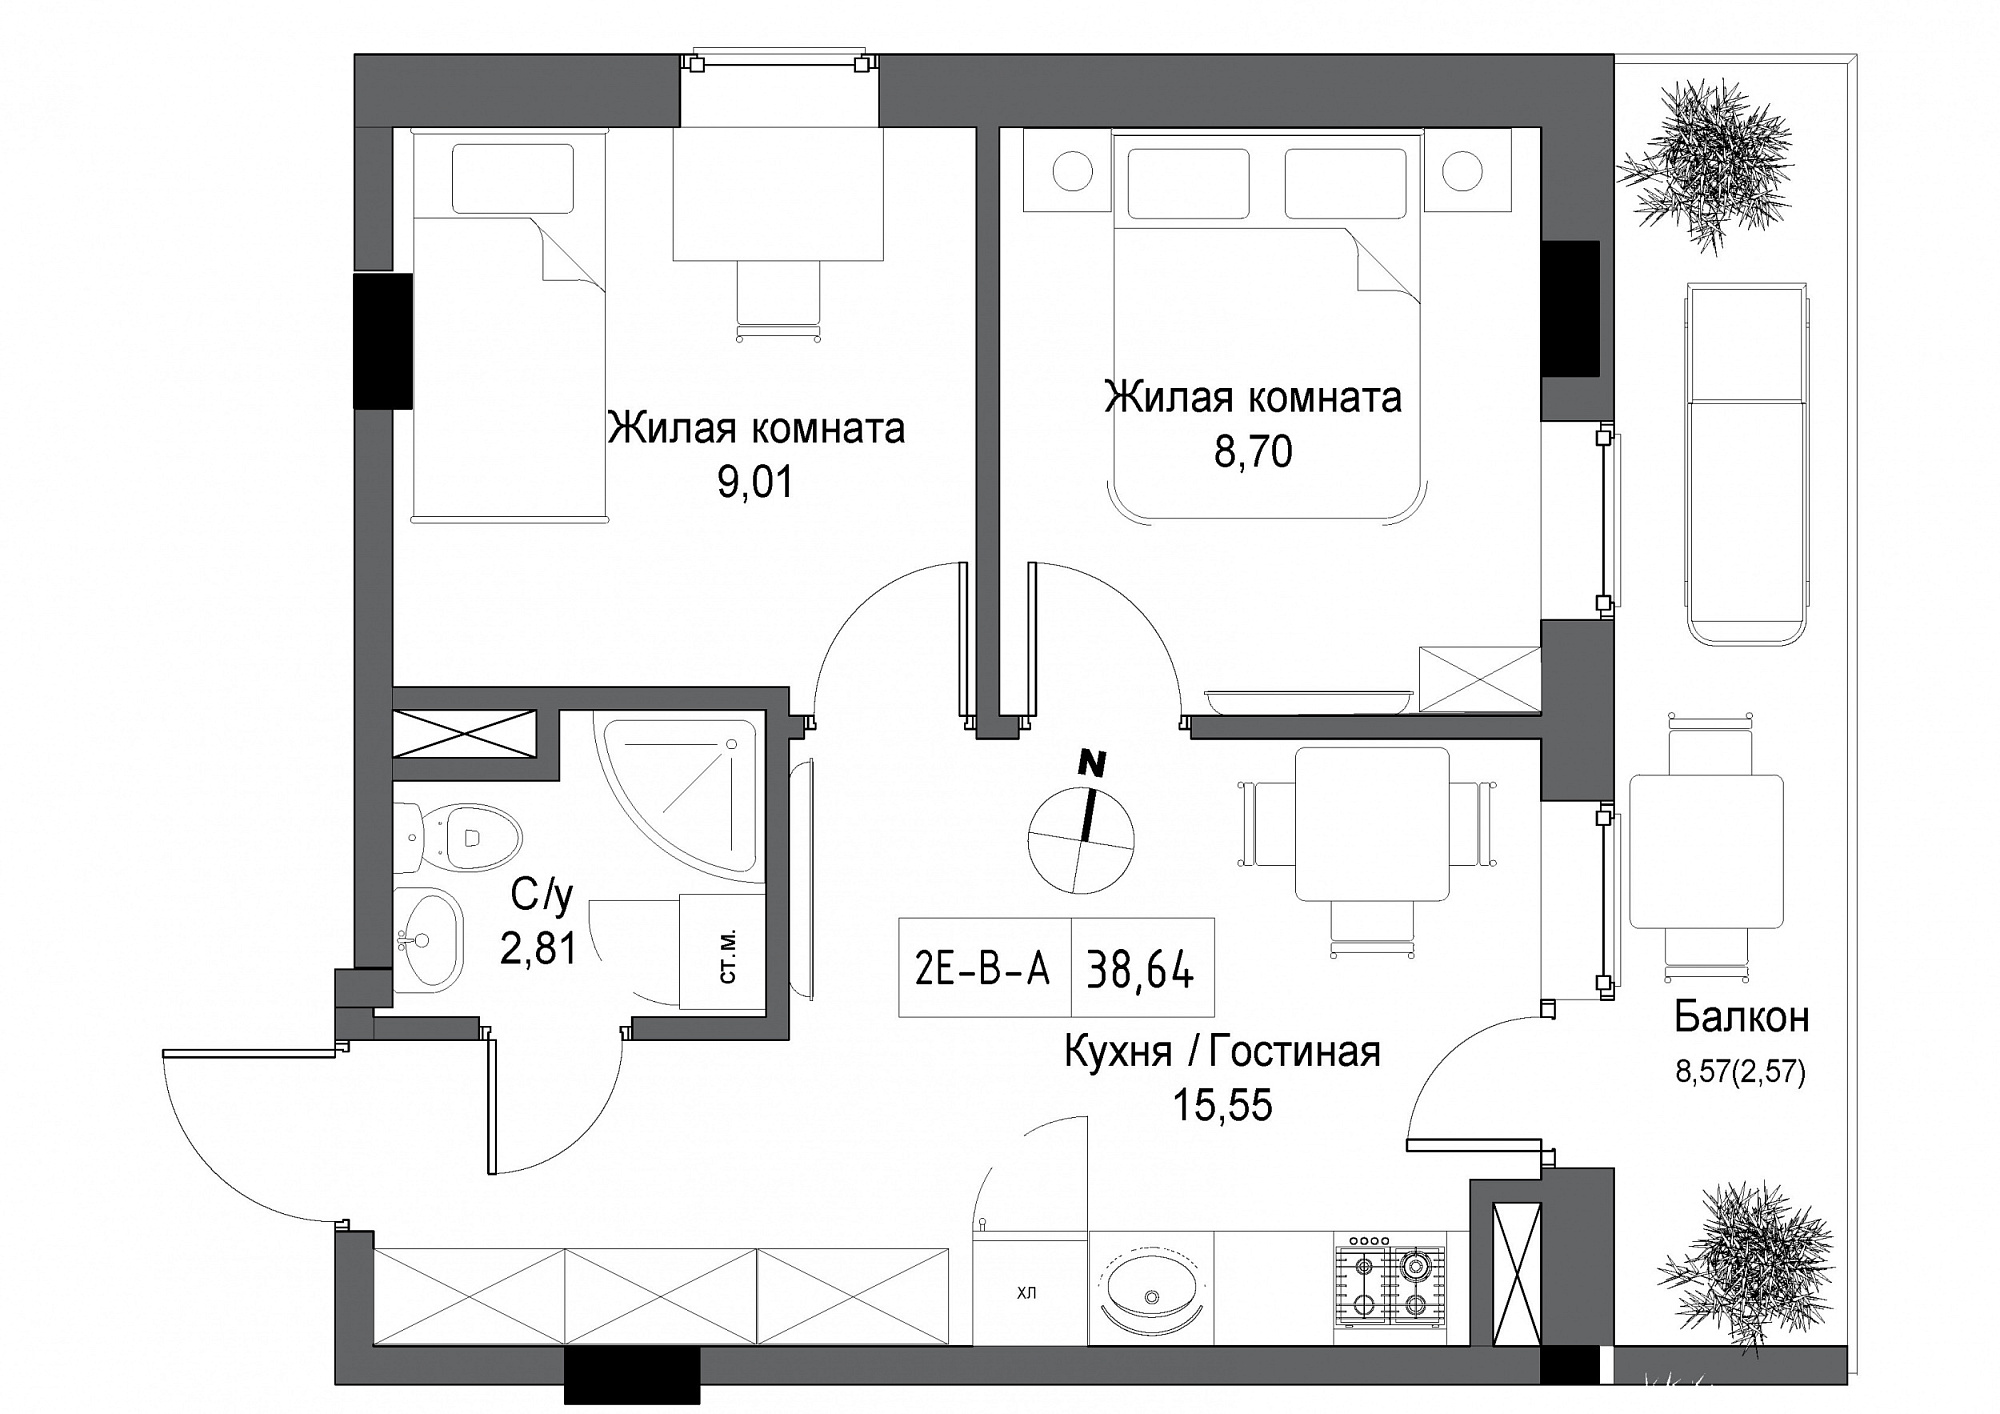 Планировка 2-к квартира площей 38.64м2, UM-004-07/0005.